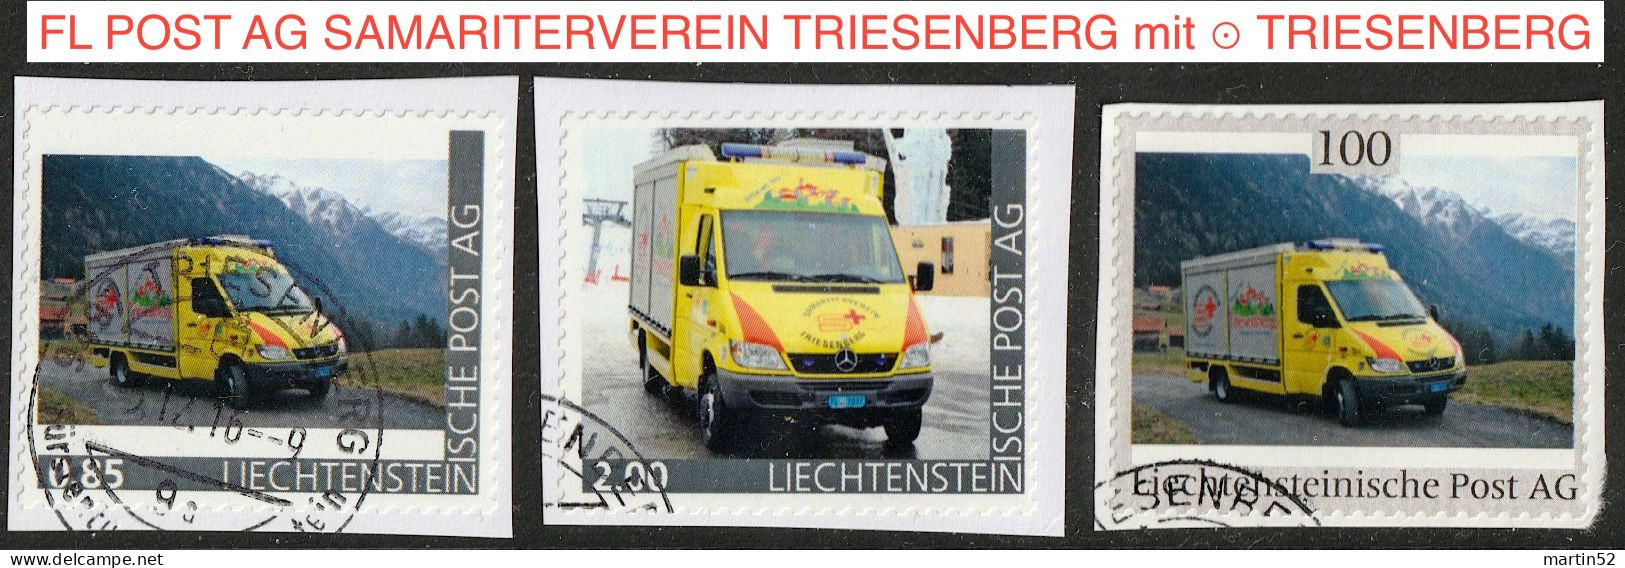 Liechtenstein 2016: Ausgabe Der FL POST AG "SAMARITERVEREIN TRIESENBERG" (Rettungs-Bus) Mit ⊙ Von TRIESENBERG - Variétés